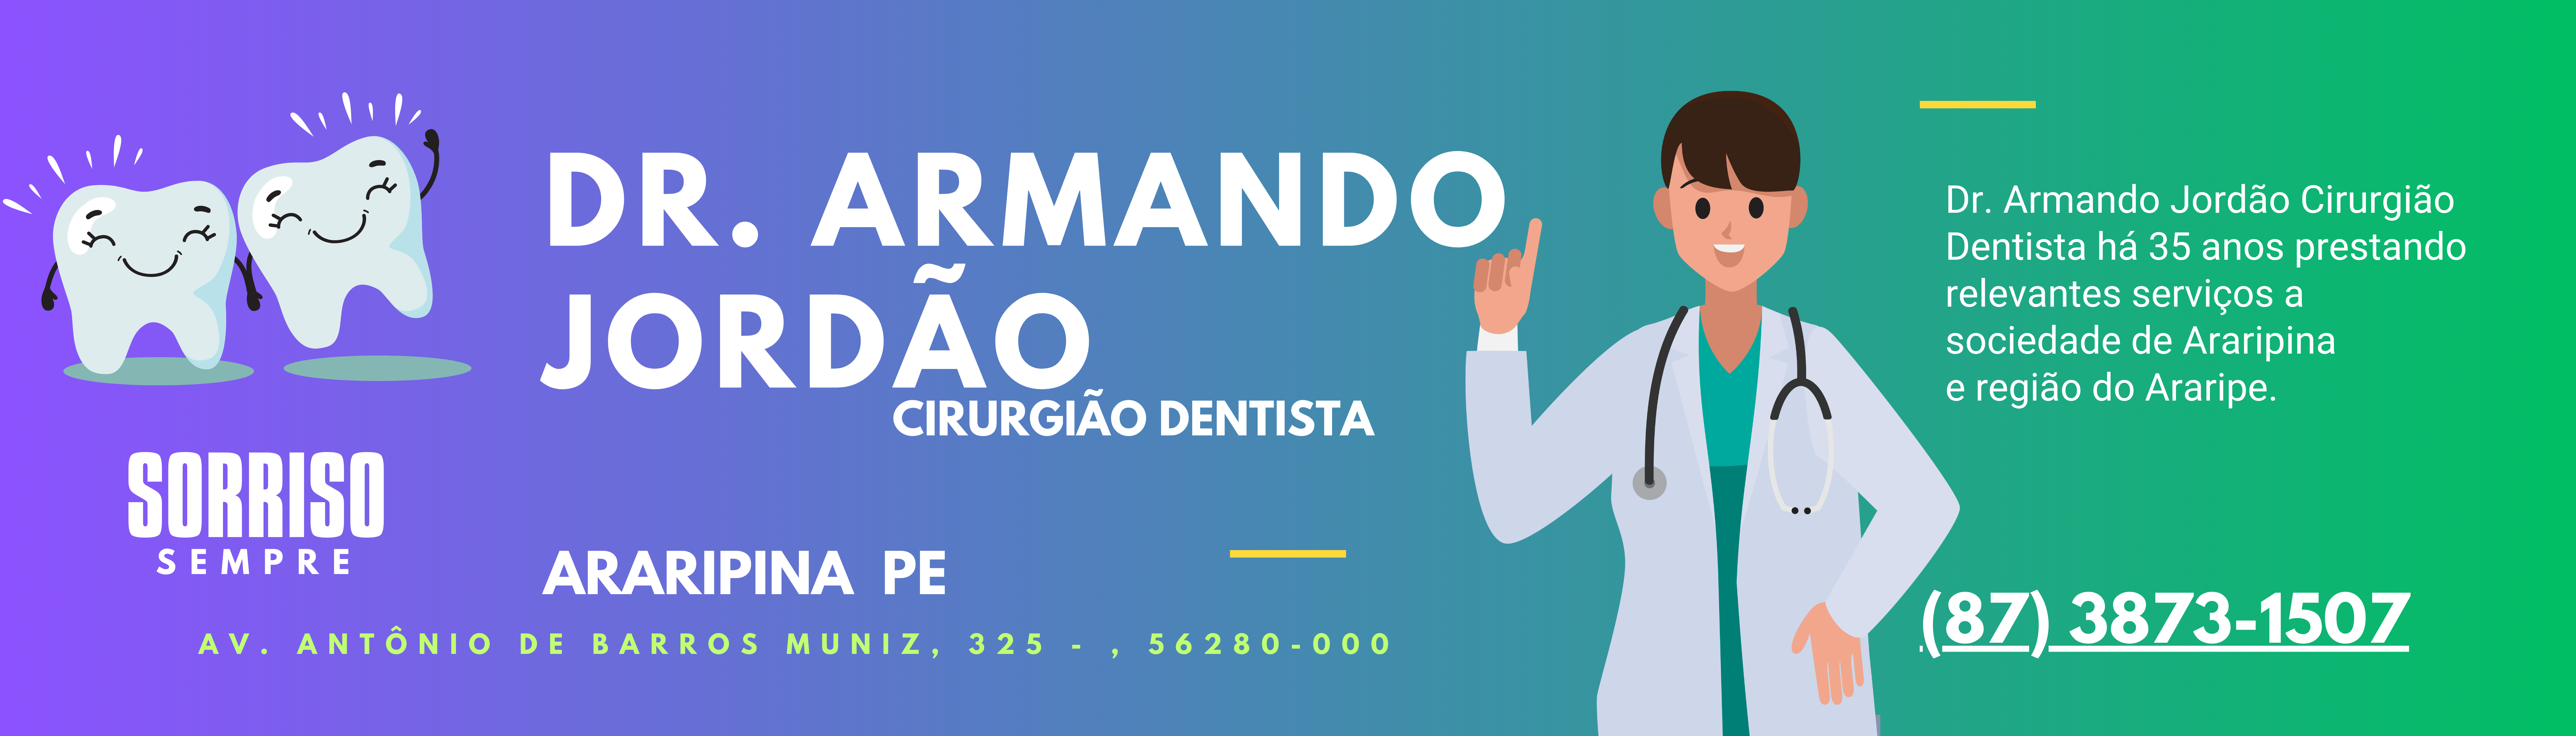 Dr. Armando Jordão Cirurgião Dentista